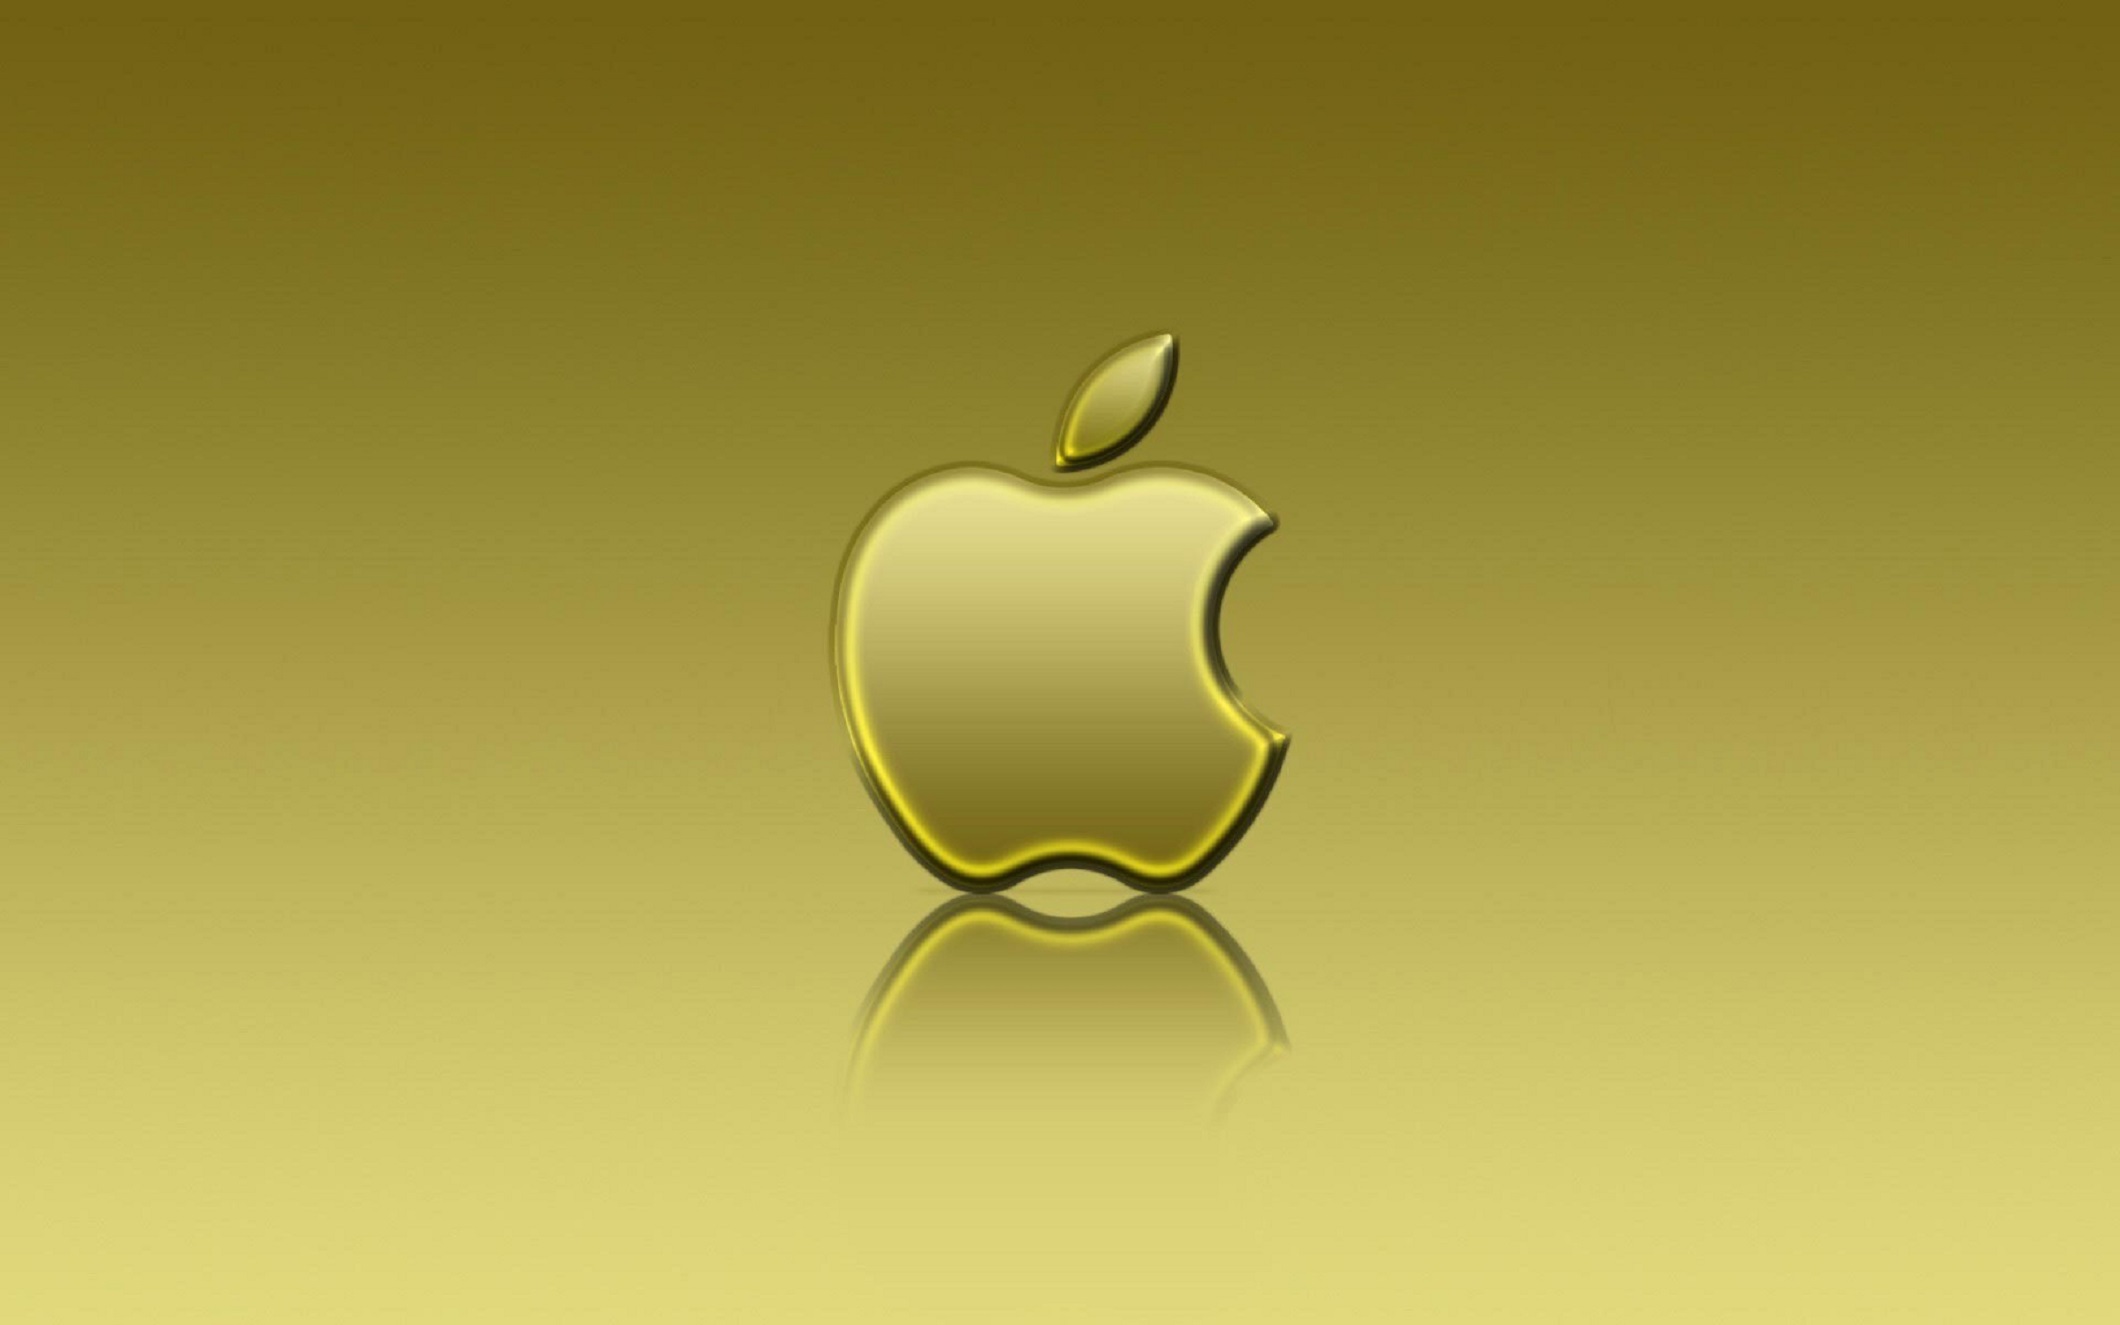 apple logo wallpaper hd